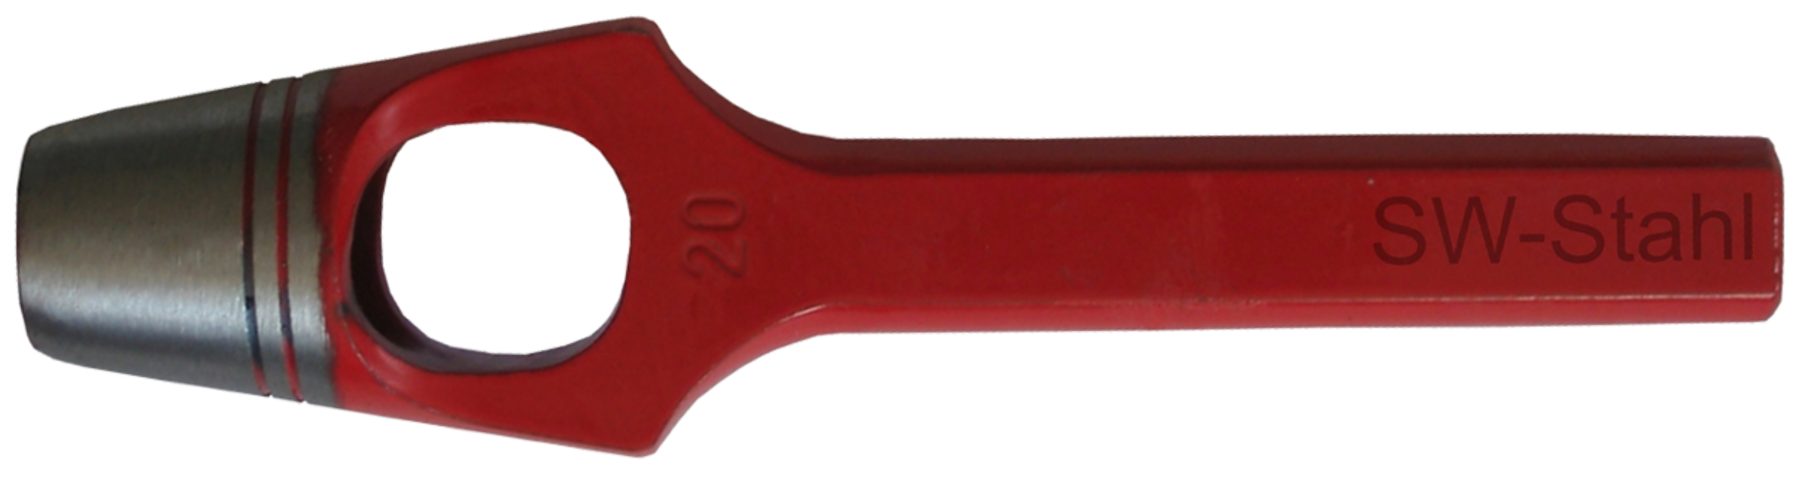 SW-STAHL Multitool 95014L Henkellocheisen ø 14 mm, rot lackiert, geschliffen